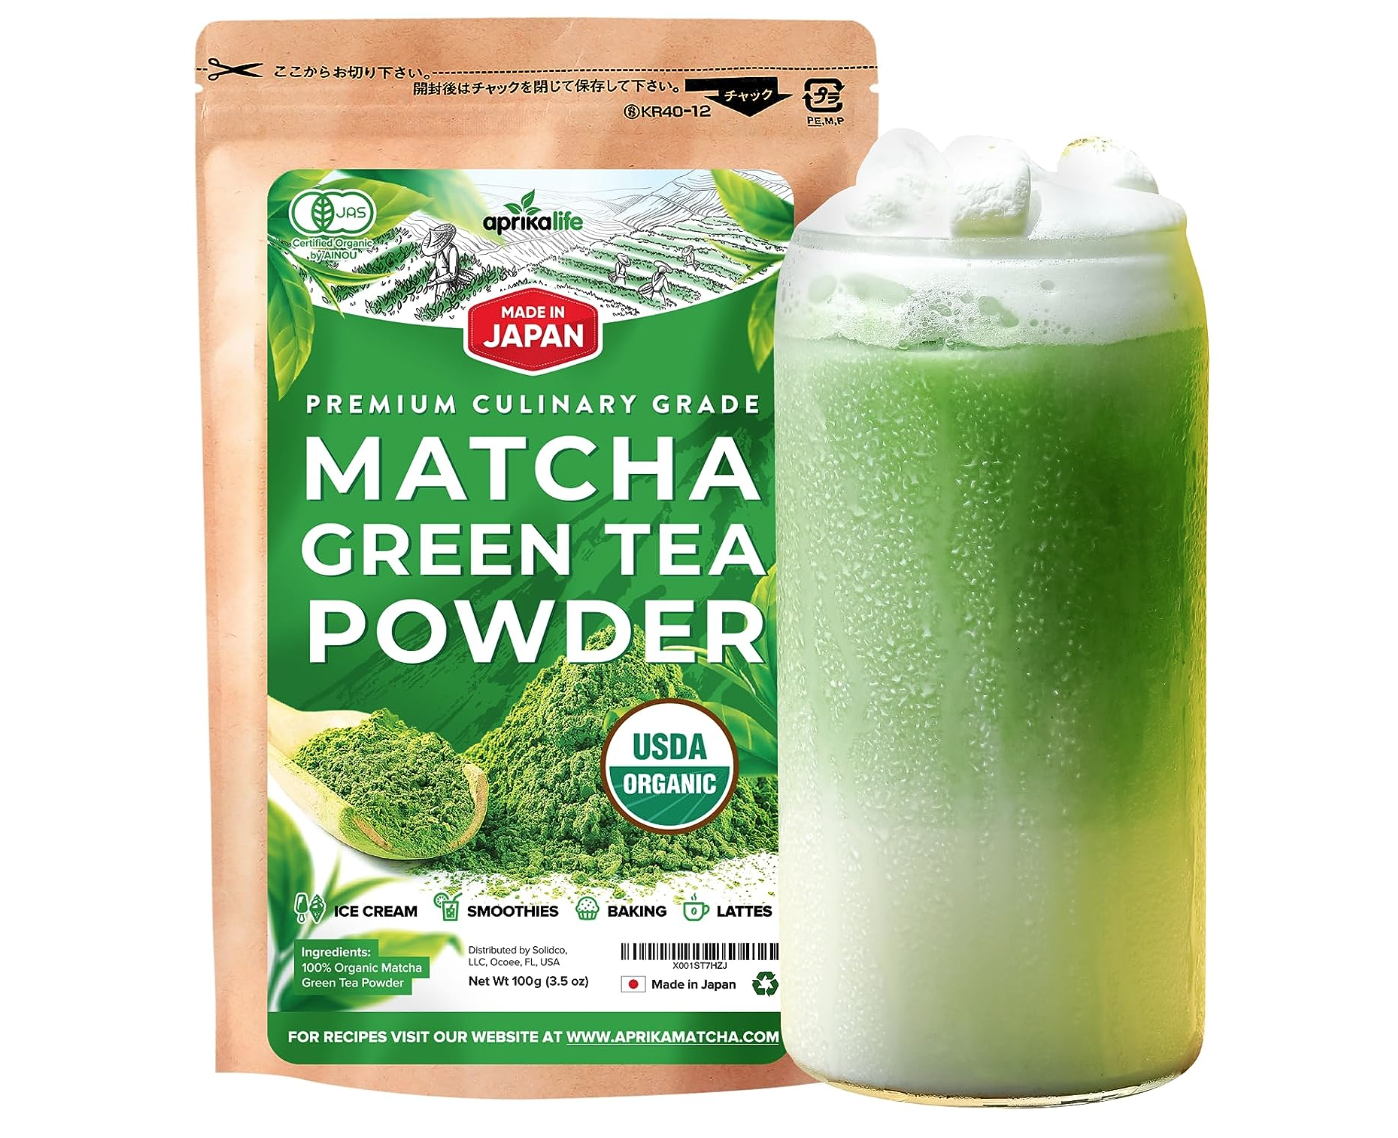 MATCHA DNA Certified Organic Matcha Green Tea Powder (16 oz TIN CAN)